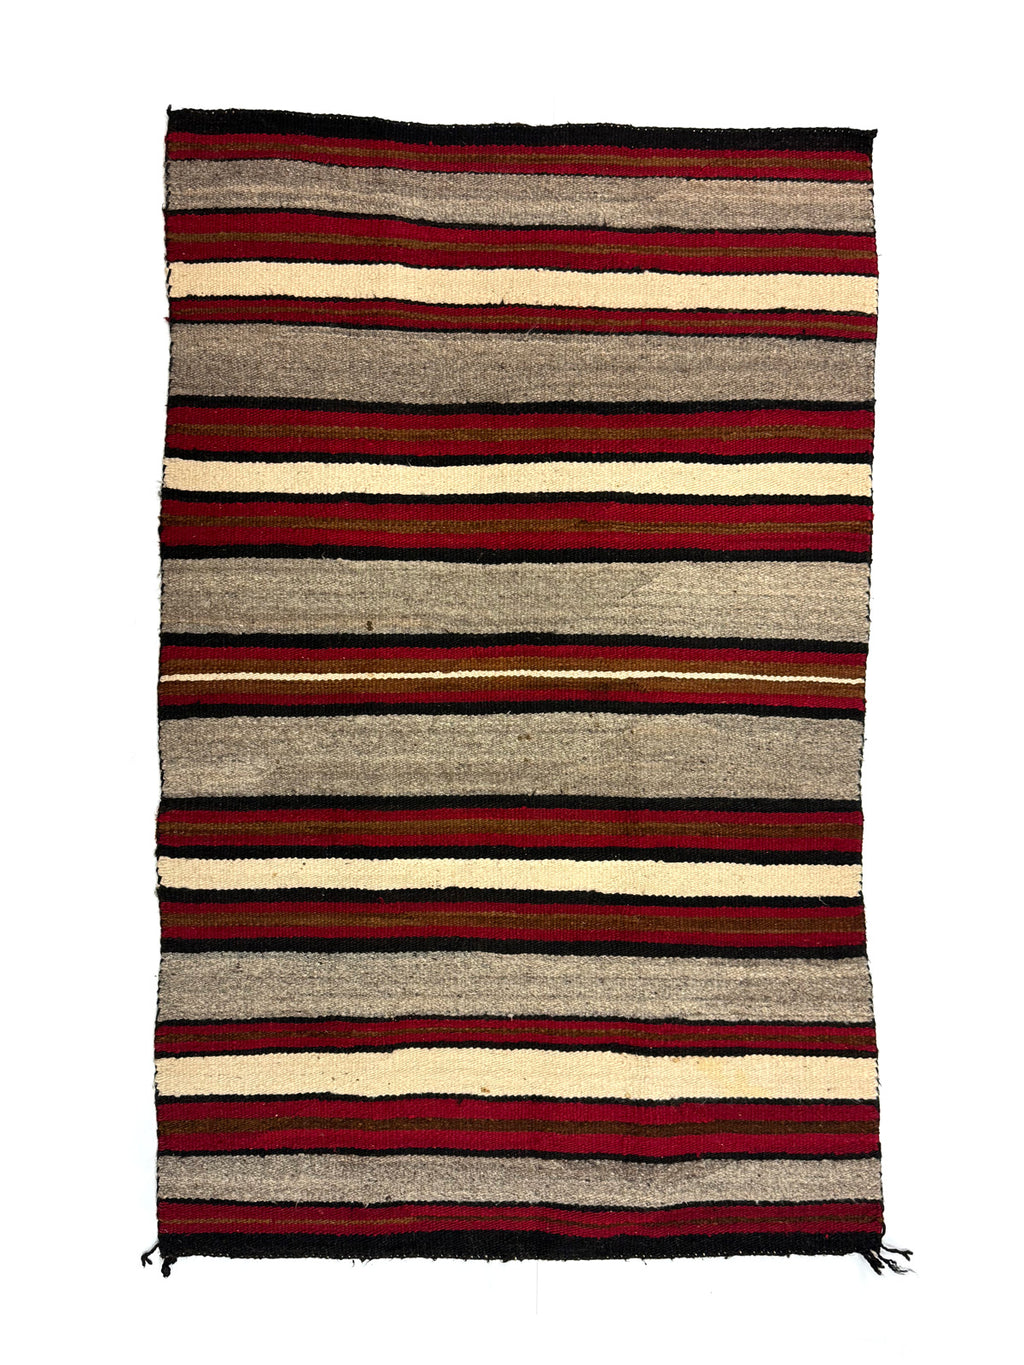 Navajo Saddle Blanket c. 1920-30s, 52" x 33.5" (T92253-1123-004)